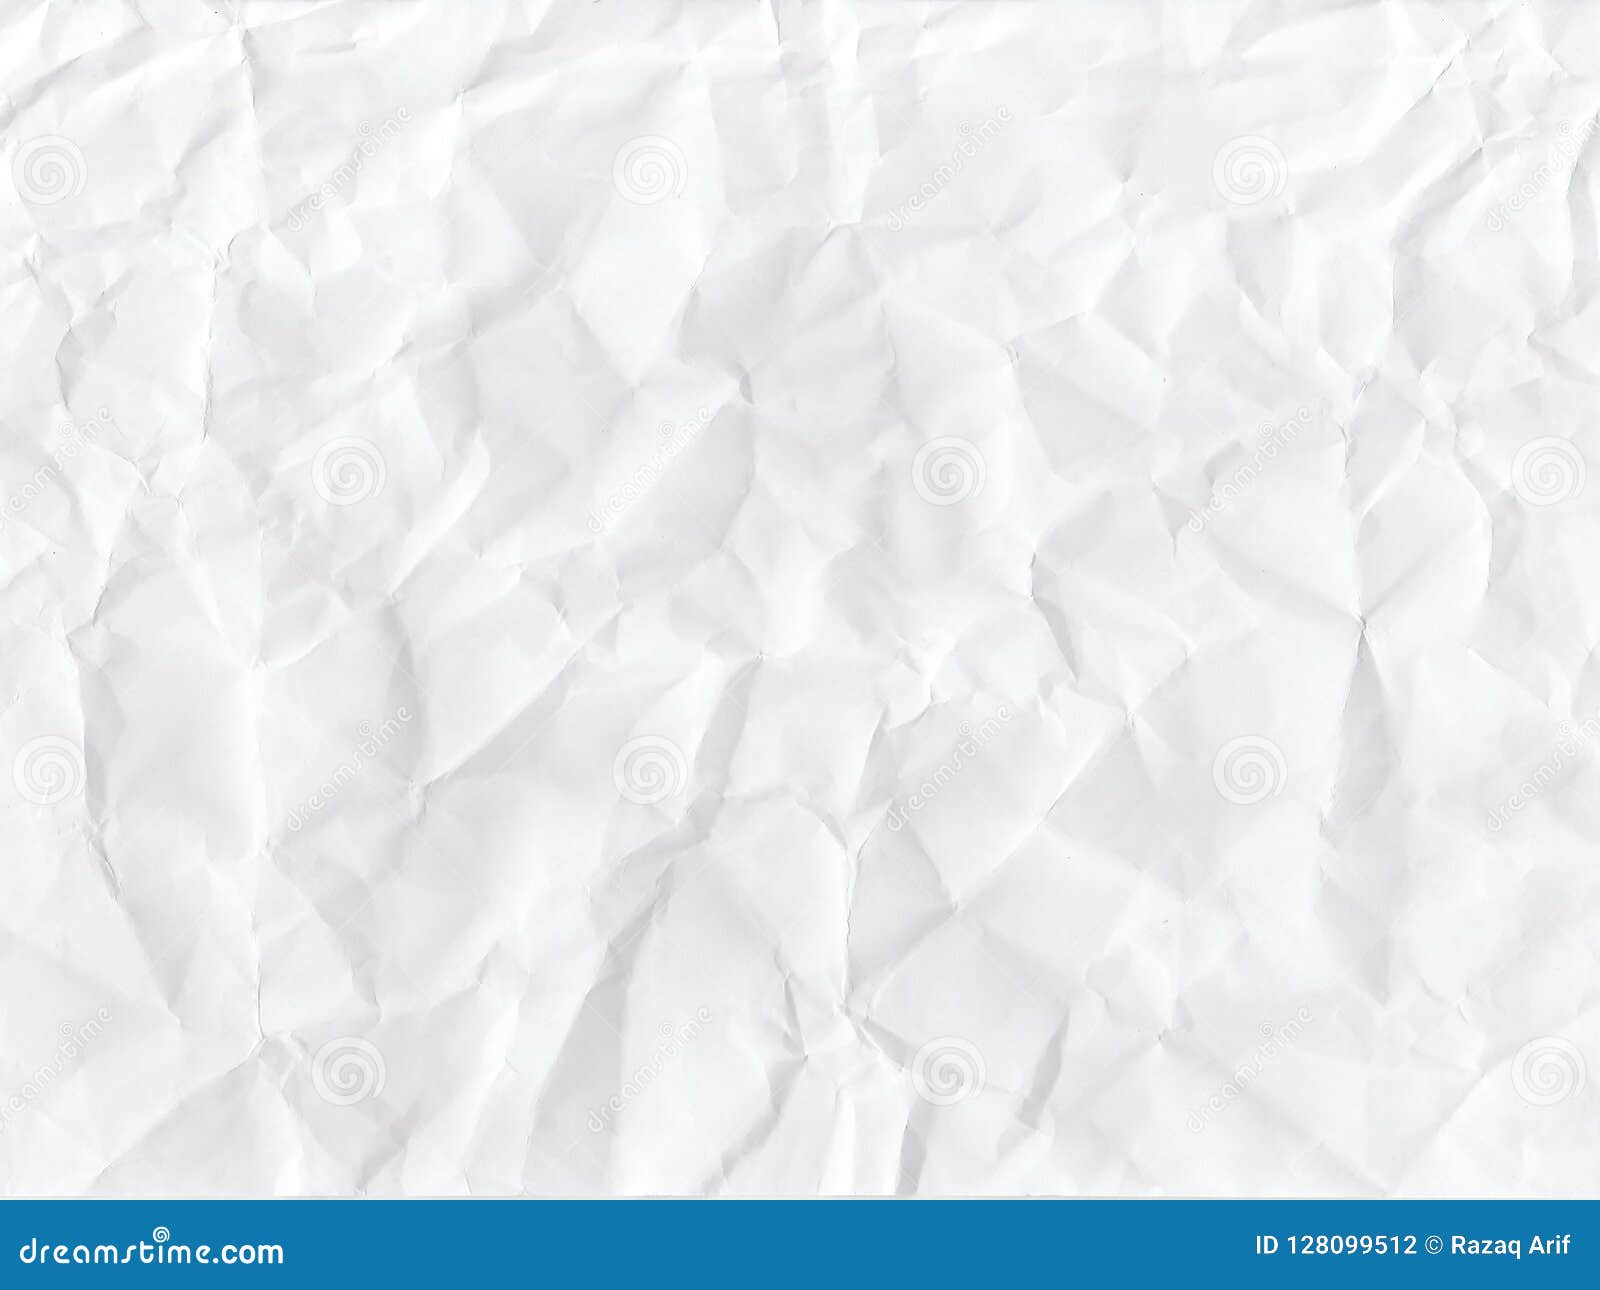 Nền giấy trắng - Các nhà thiết kế chắc chắn sẽ thích thú với hình nền nhiều độ sâu và chất liệu giấy trắng này. Với sự kết hợp tinh tế giữa chi tiết và tông màu, hình nền này sẽ giúp cho bản thiết kế của bạn trở nên cuốn hút hơn bao giờ hết.